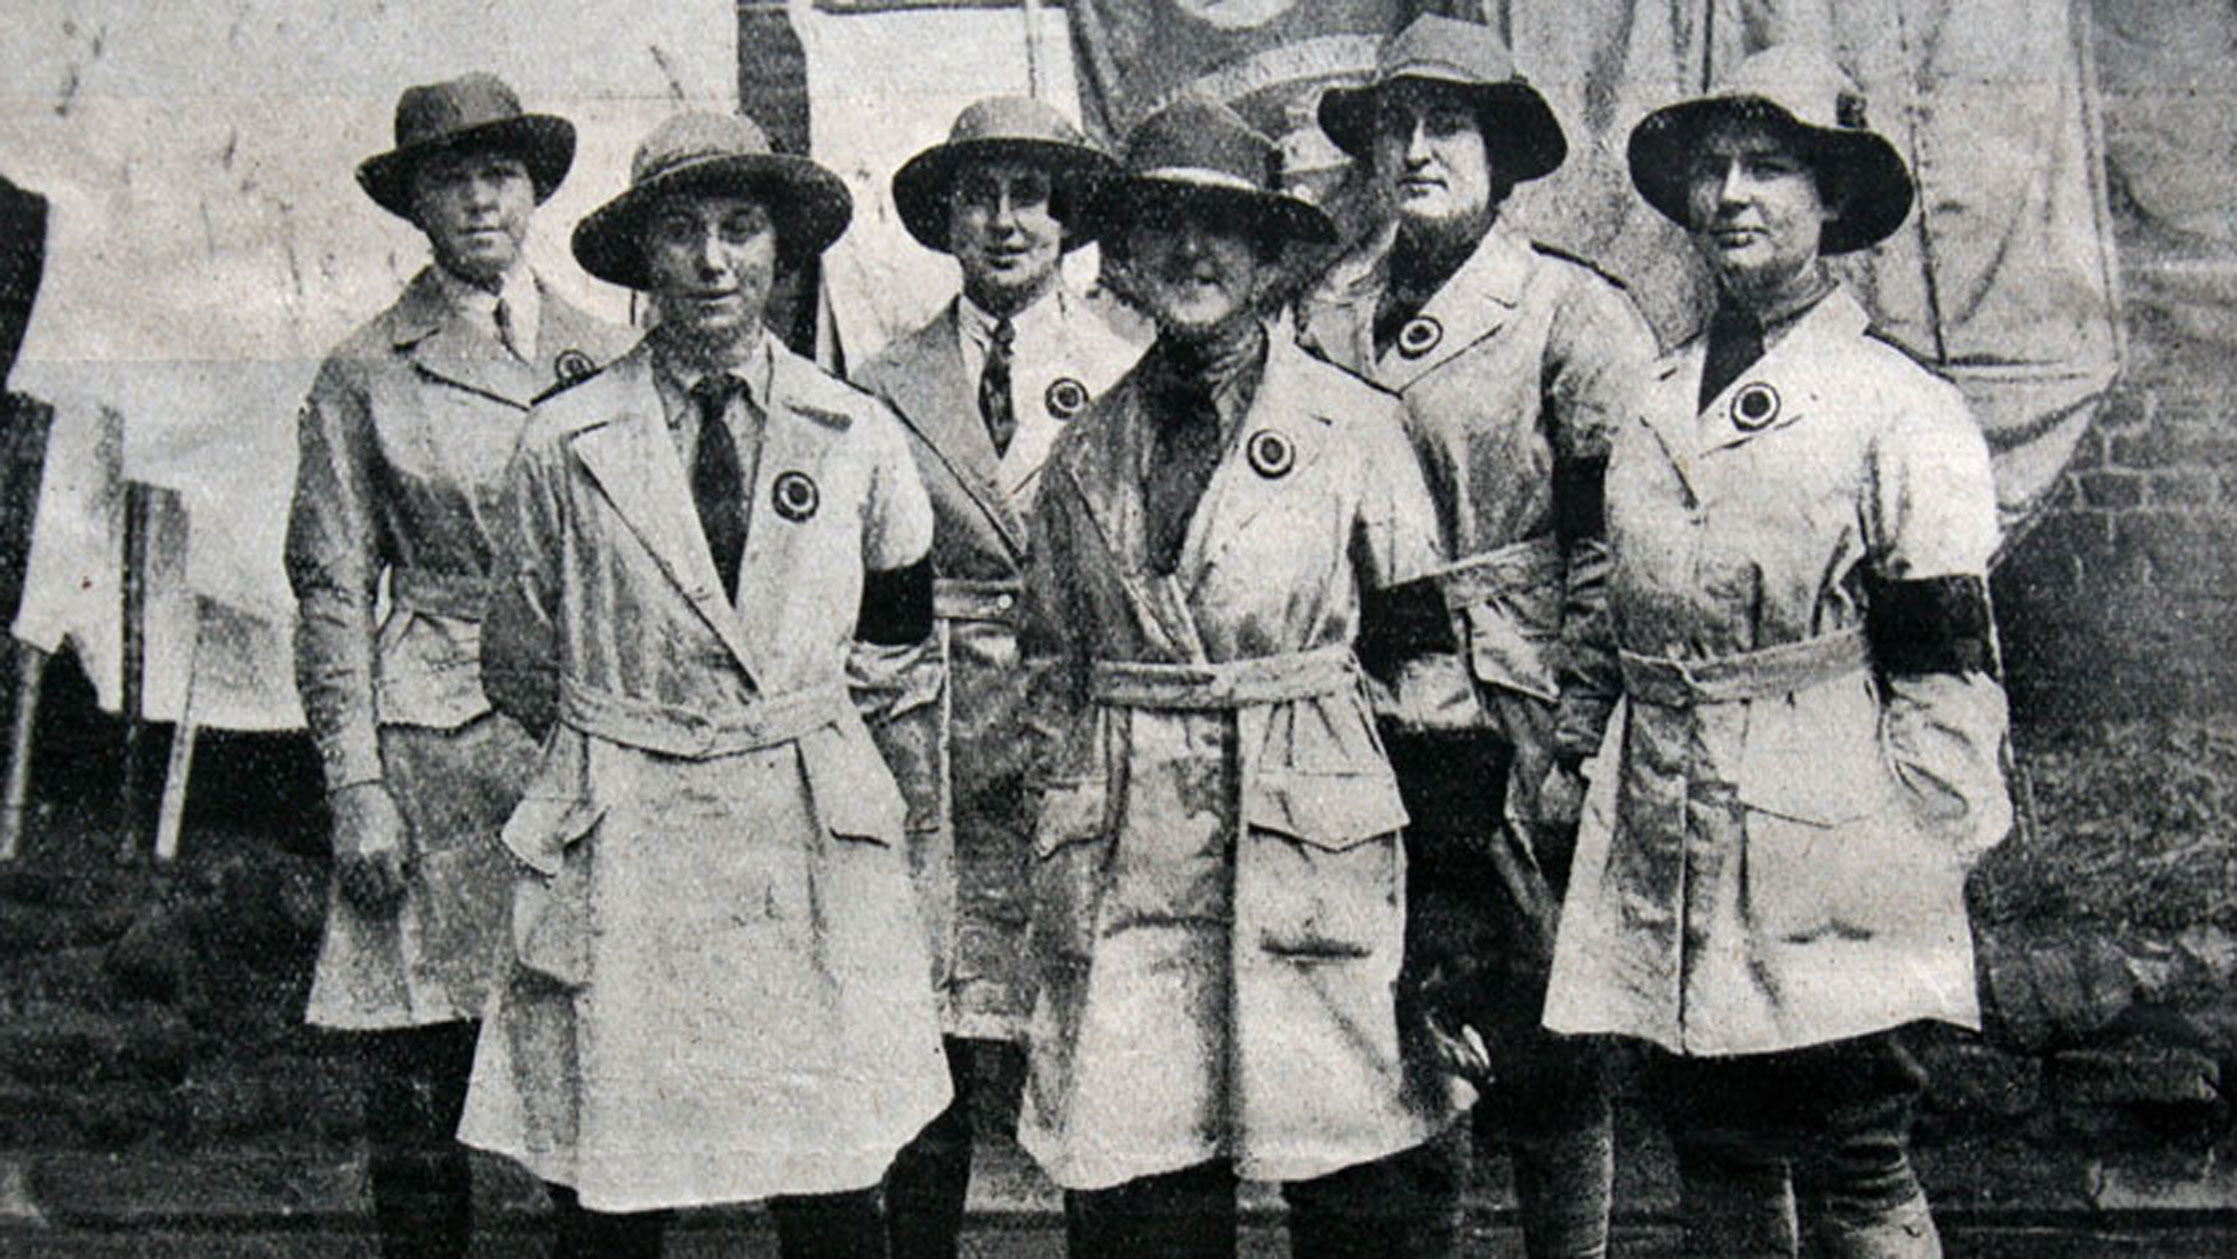 Land girls during the First World War